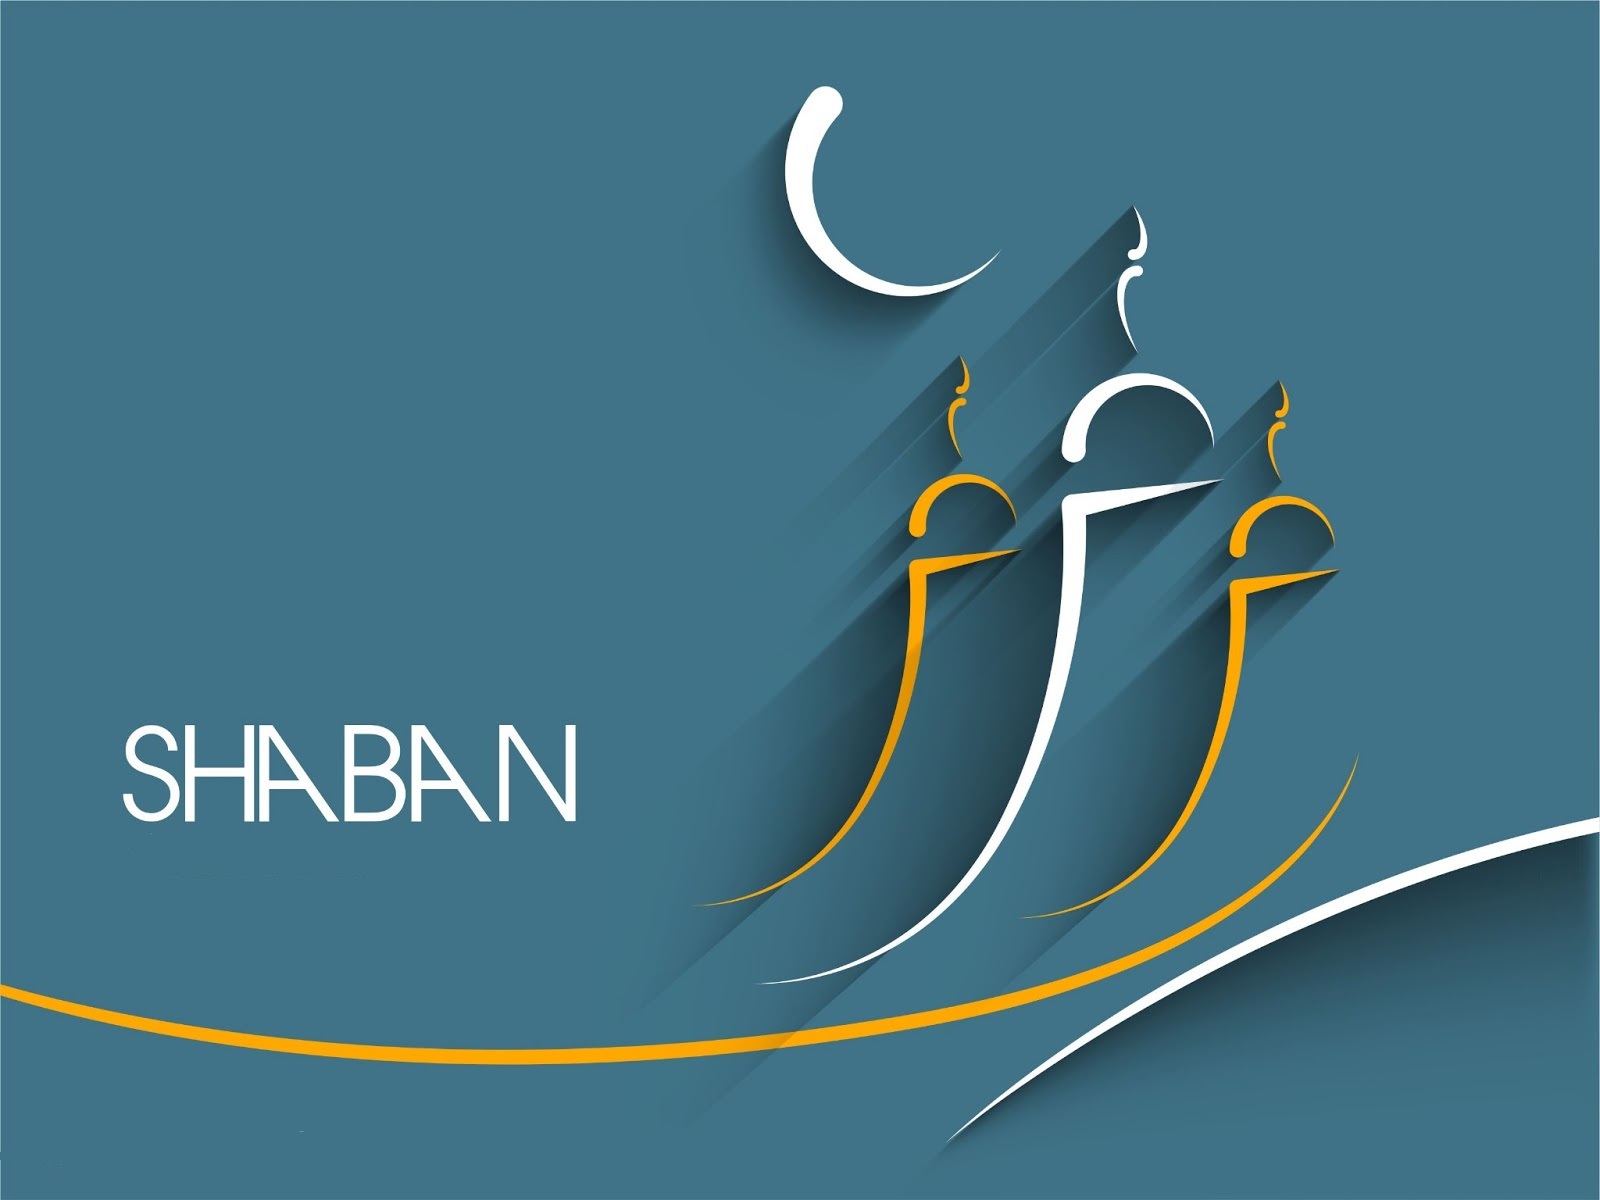 El ayuno en el mes de Shaban tiene un gran mérito: es el mes en el que nuestras acciones son presentadas ante Allah y nos prepara para Ramadán